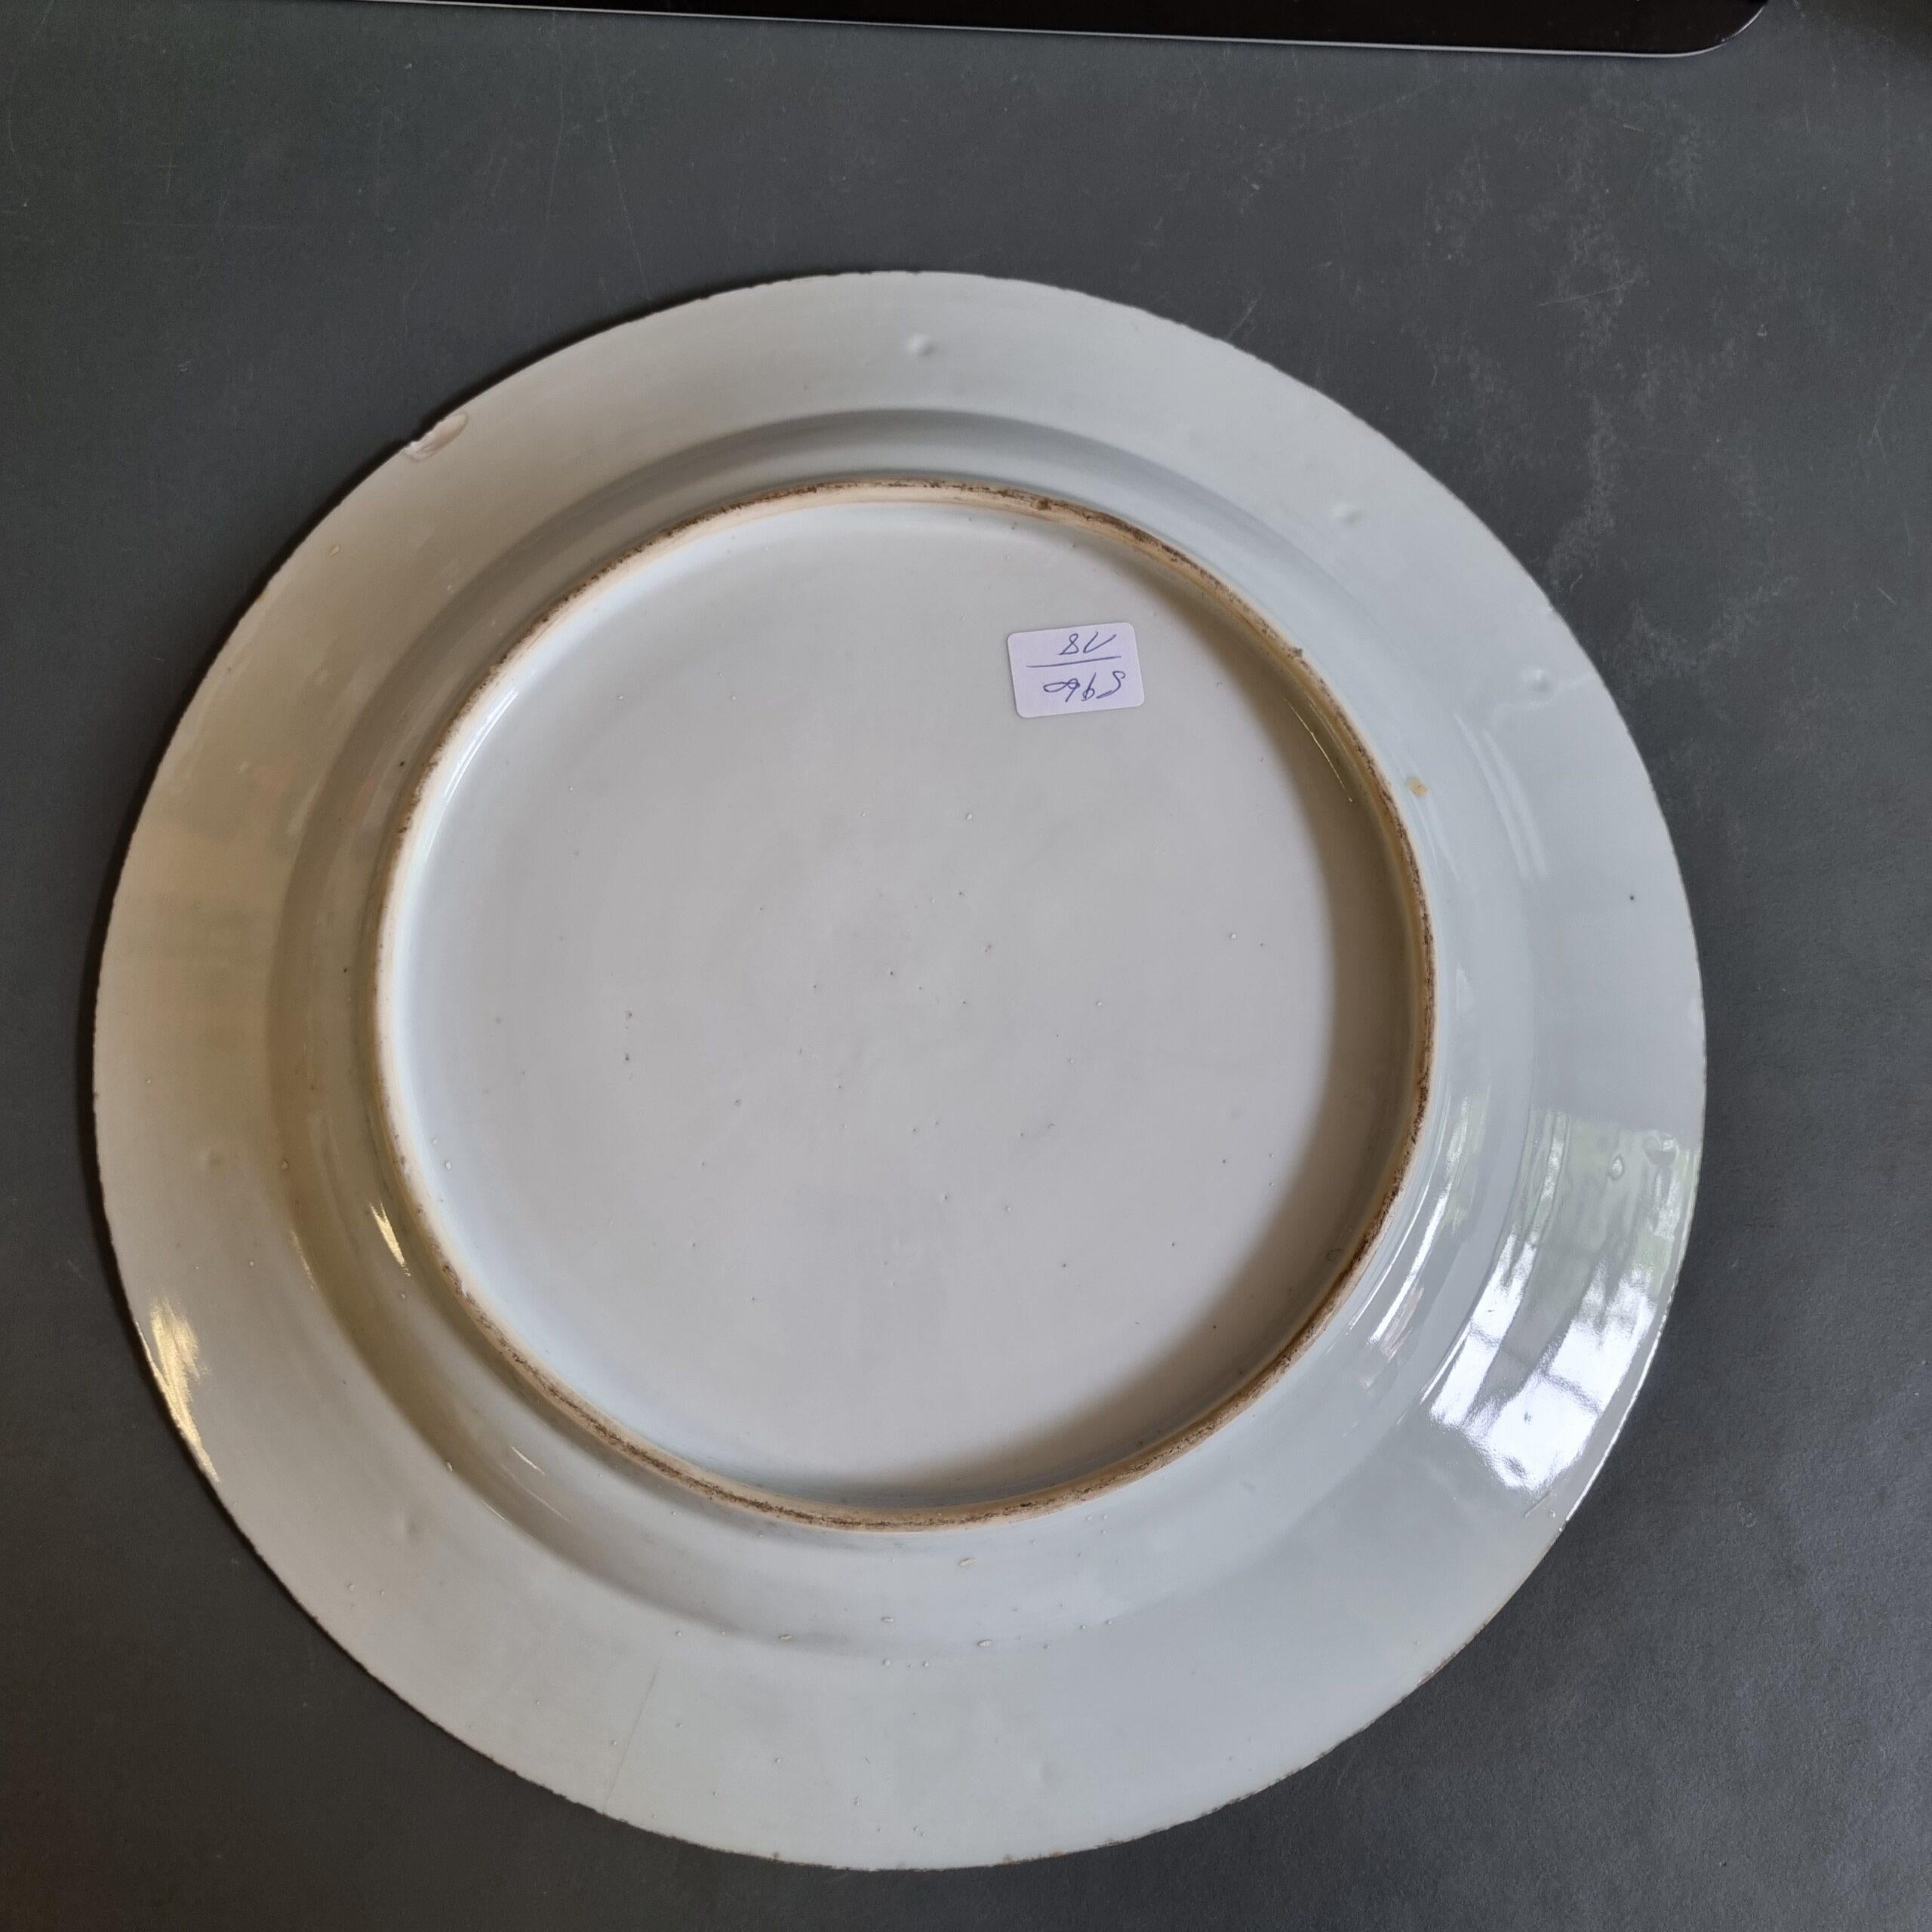 Rare chargeur ancien en porcelaine chinoise Armoiries Gallart Marchant, ca 1750-1760

Ce plat en porcelaine chinoise de grande taille est très inhabituel. Porcelaine bleu et blanc de première qualité de la période Qianlong.

Les deux plus grands